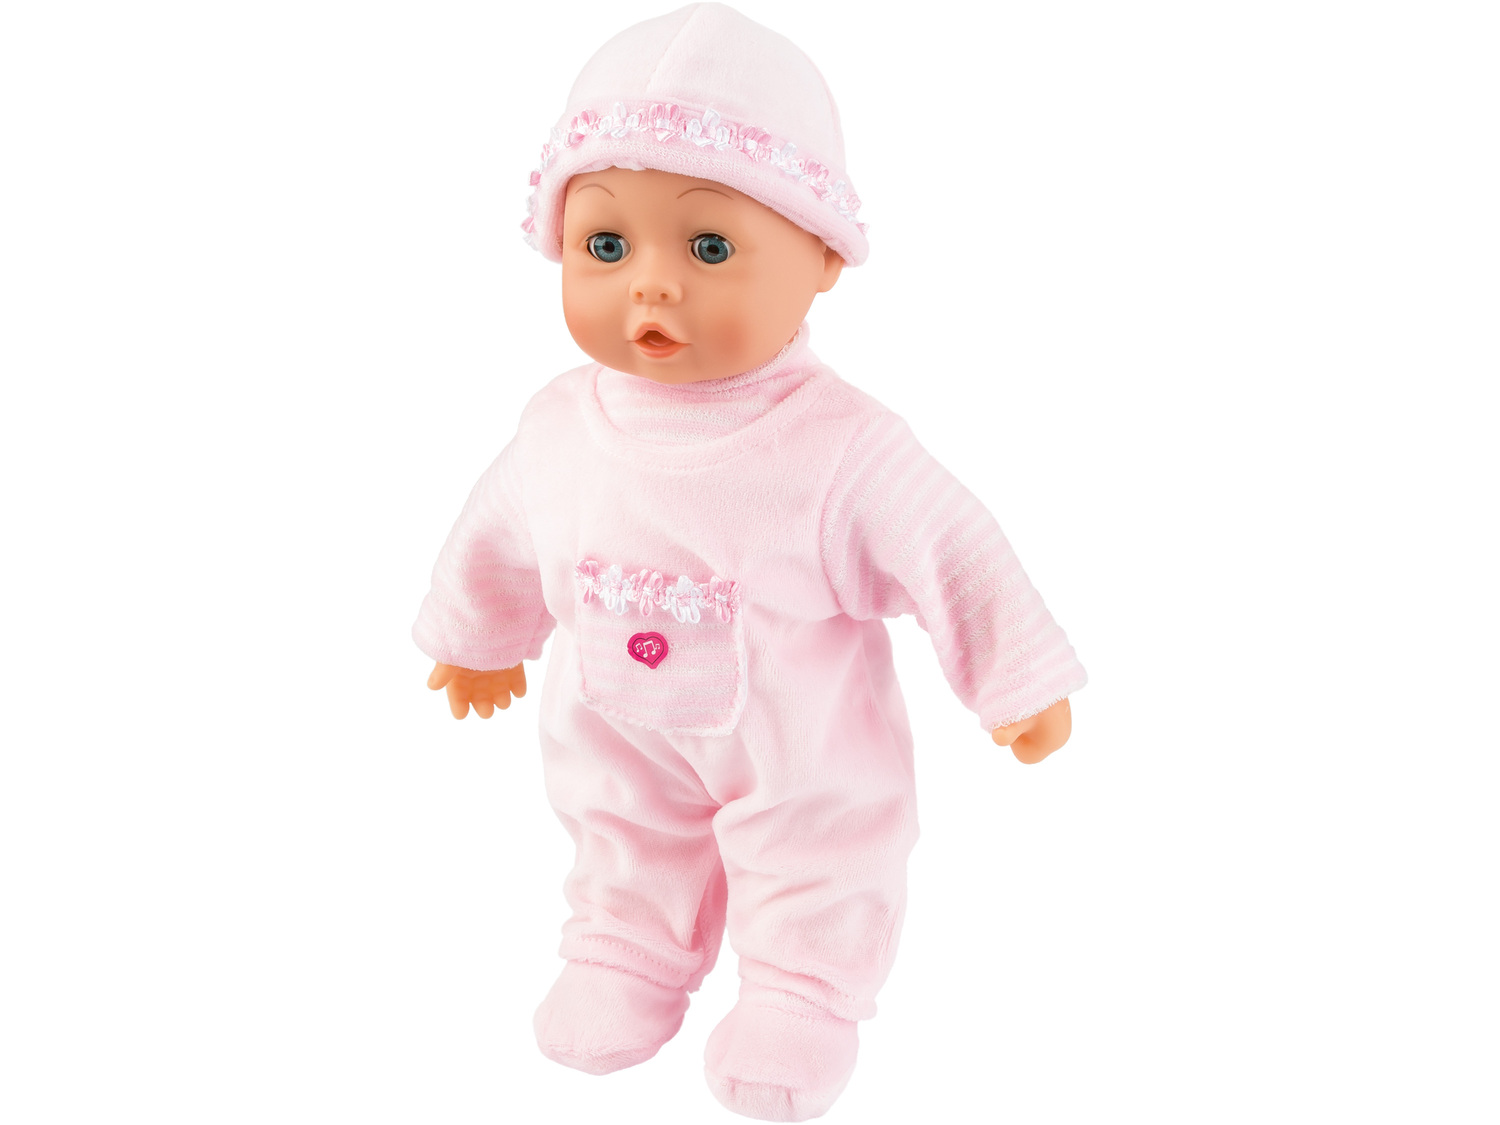 Lalka interaktywna Piccolina First Words Baby Bayer, cena 49,99 PLN 
- z ubrankiem, ...